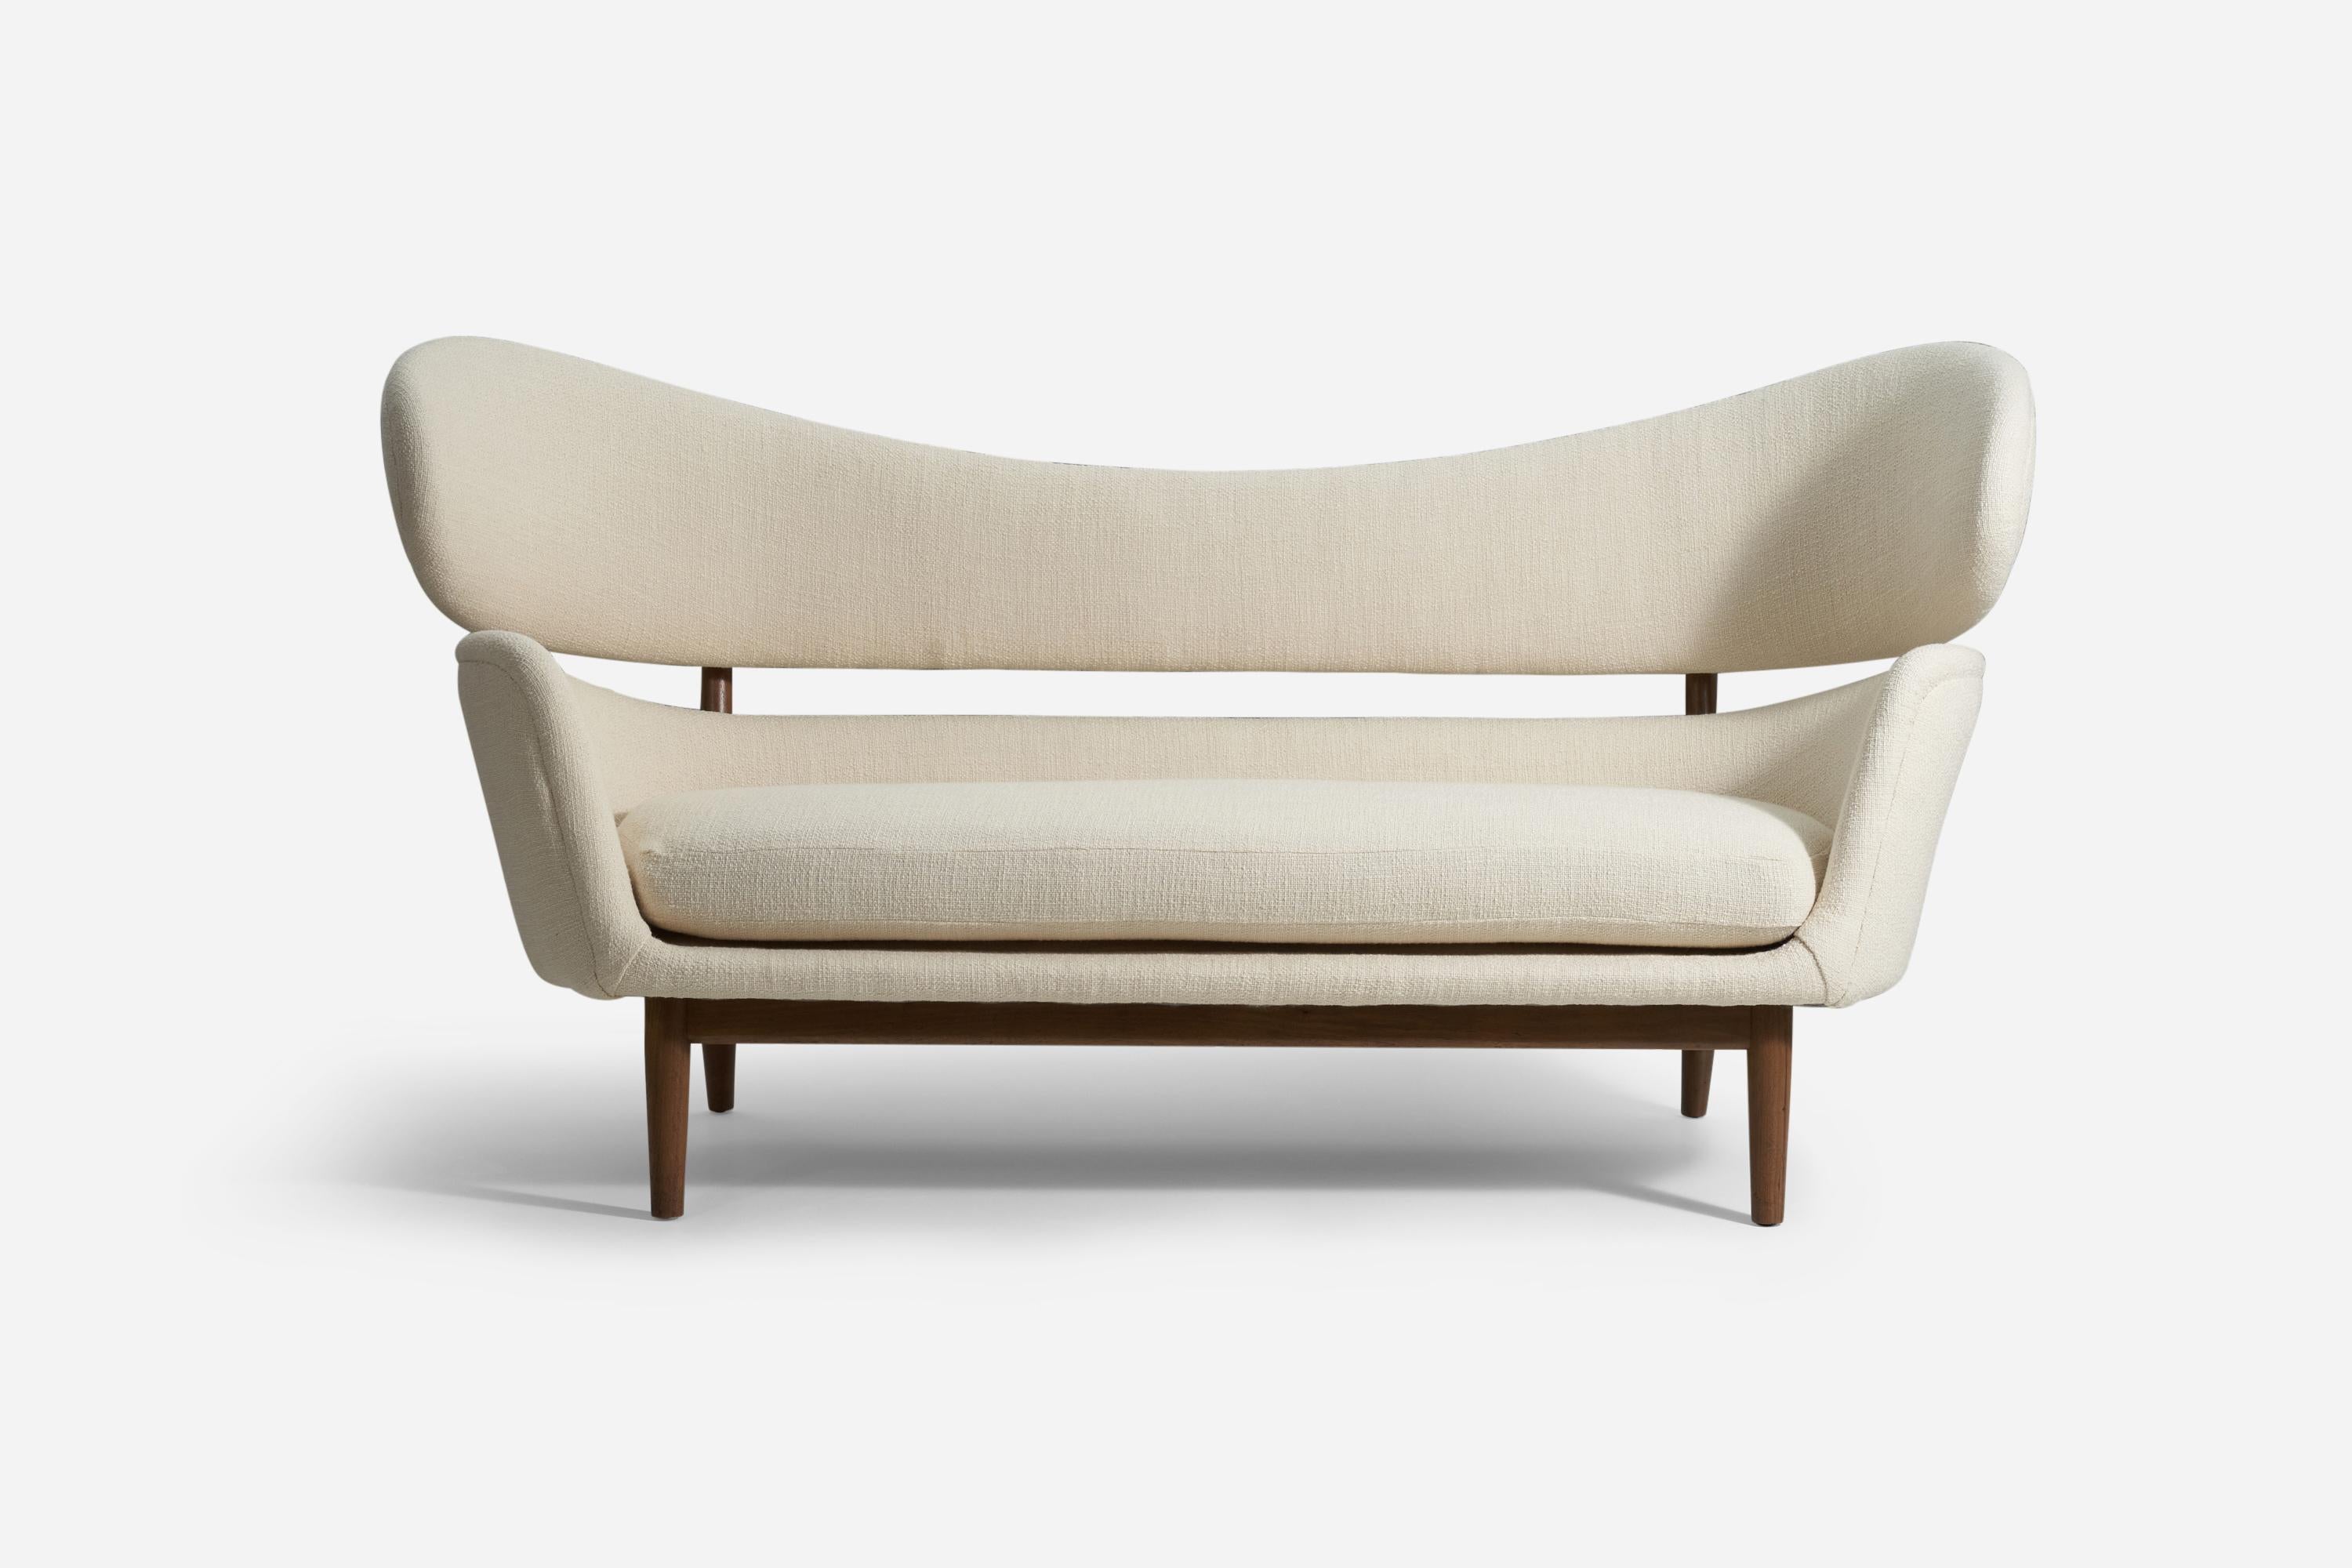 Un rare et important canapé, conçu par Finn Juhl en 1951 pour Baker Furniture Company, Michigan. 

Introduit dans la communauté du design américain par Edgar Kaufmann Jr, un collectionneur d'art et directeur du département de design industriel du